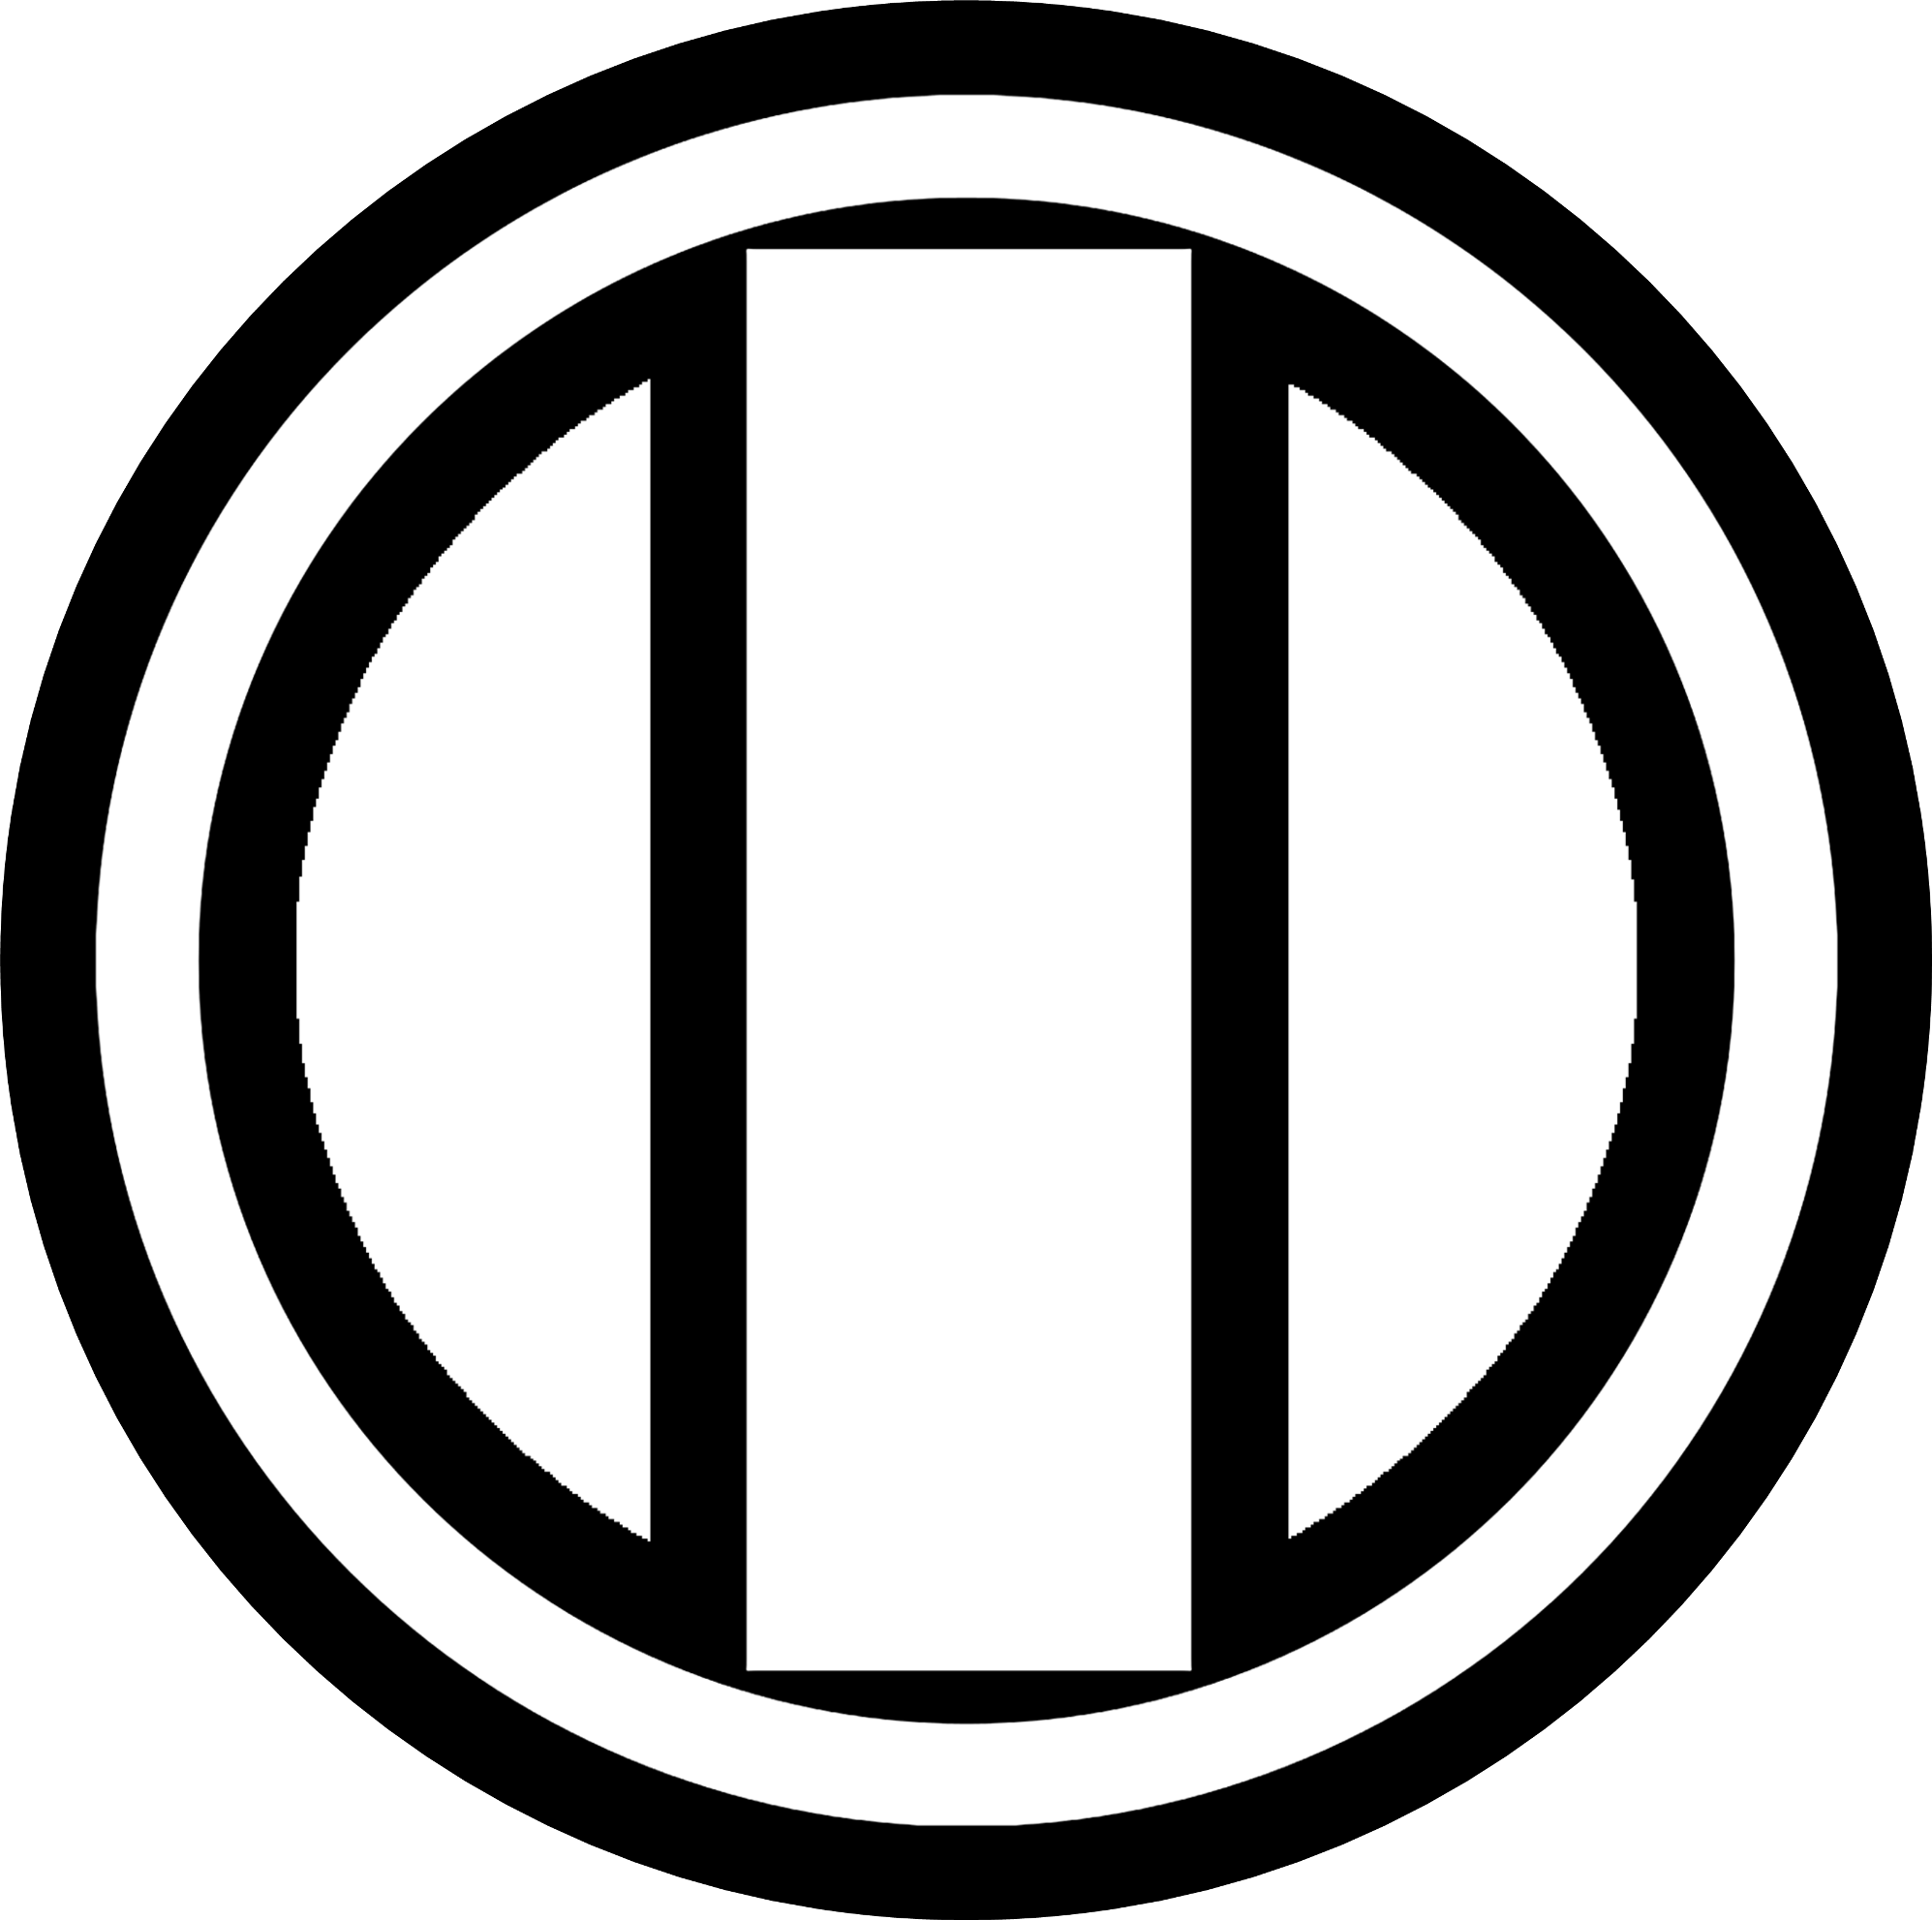 Первый логотип на прозрачном фоне. Первый канал логотип 1995. Логотип ОРТ 1997. ОРТ Телепедия. Логотип ОРТ 2000-2001.